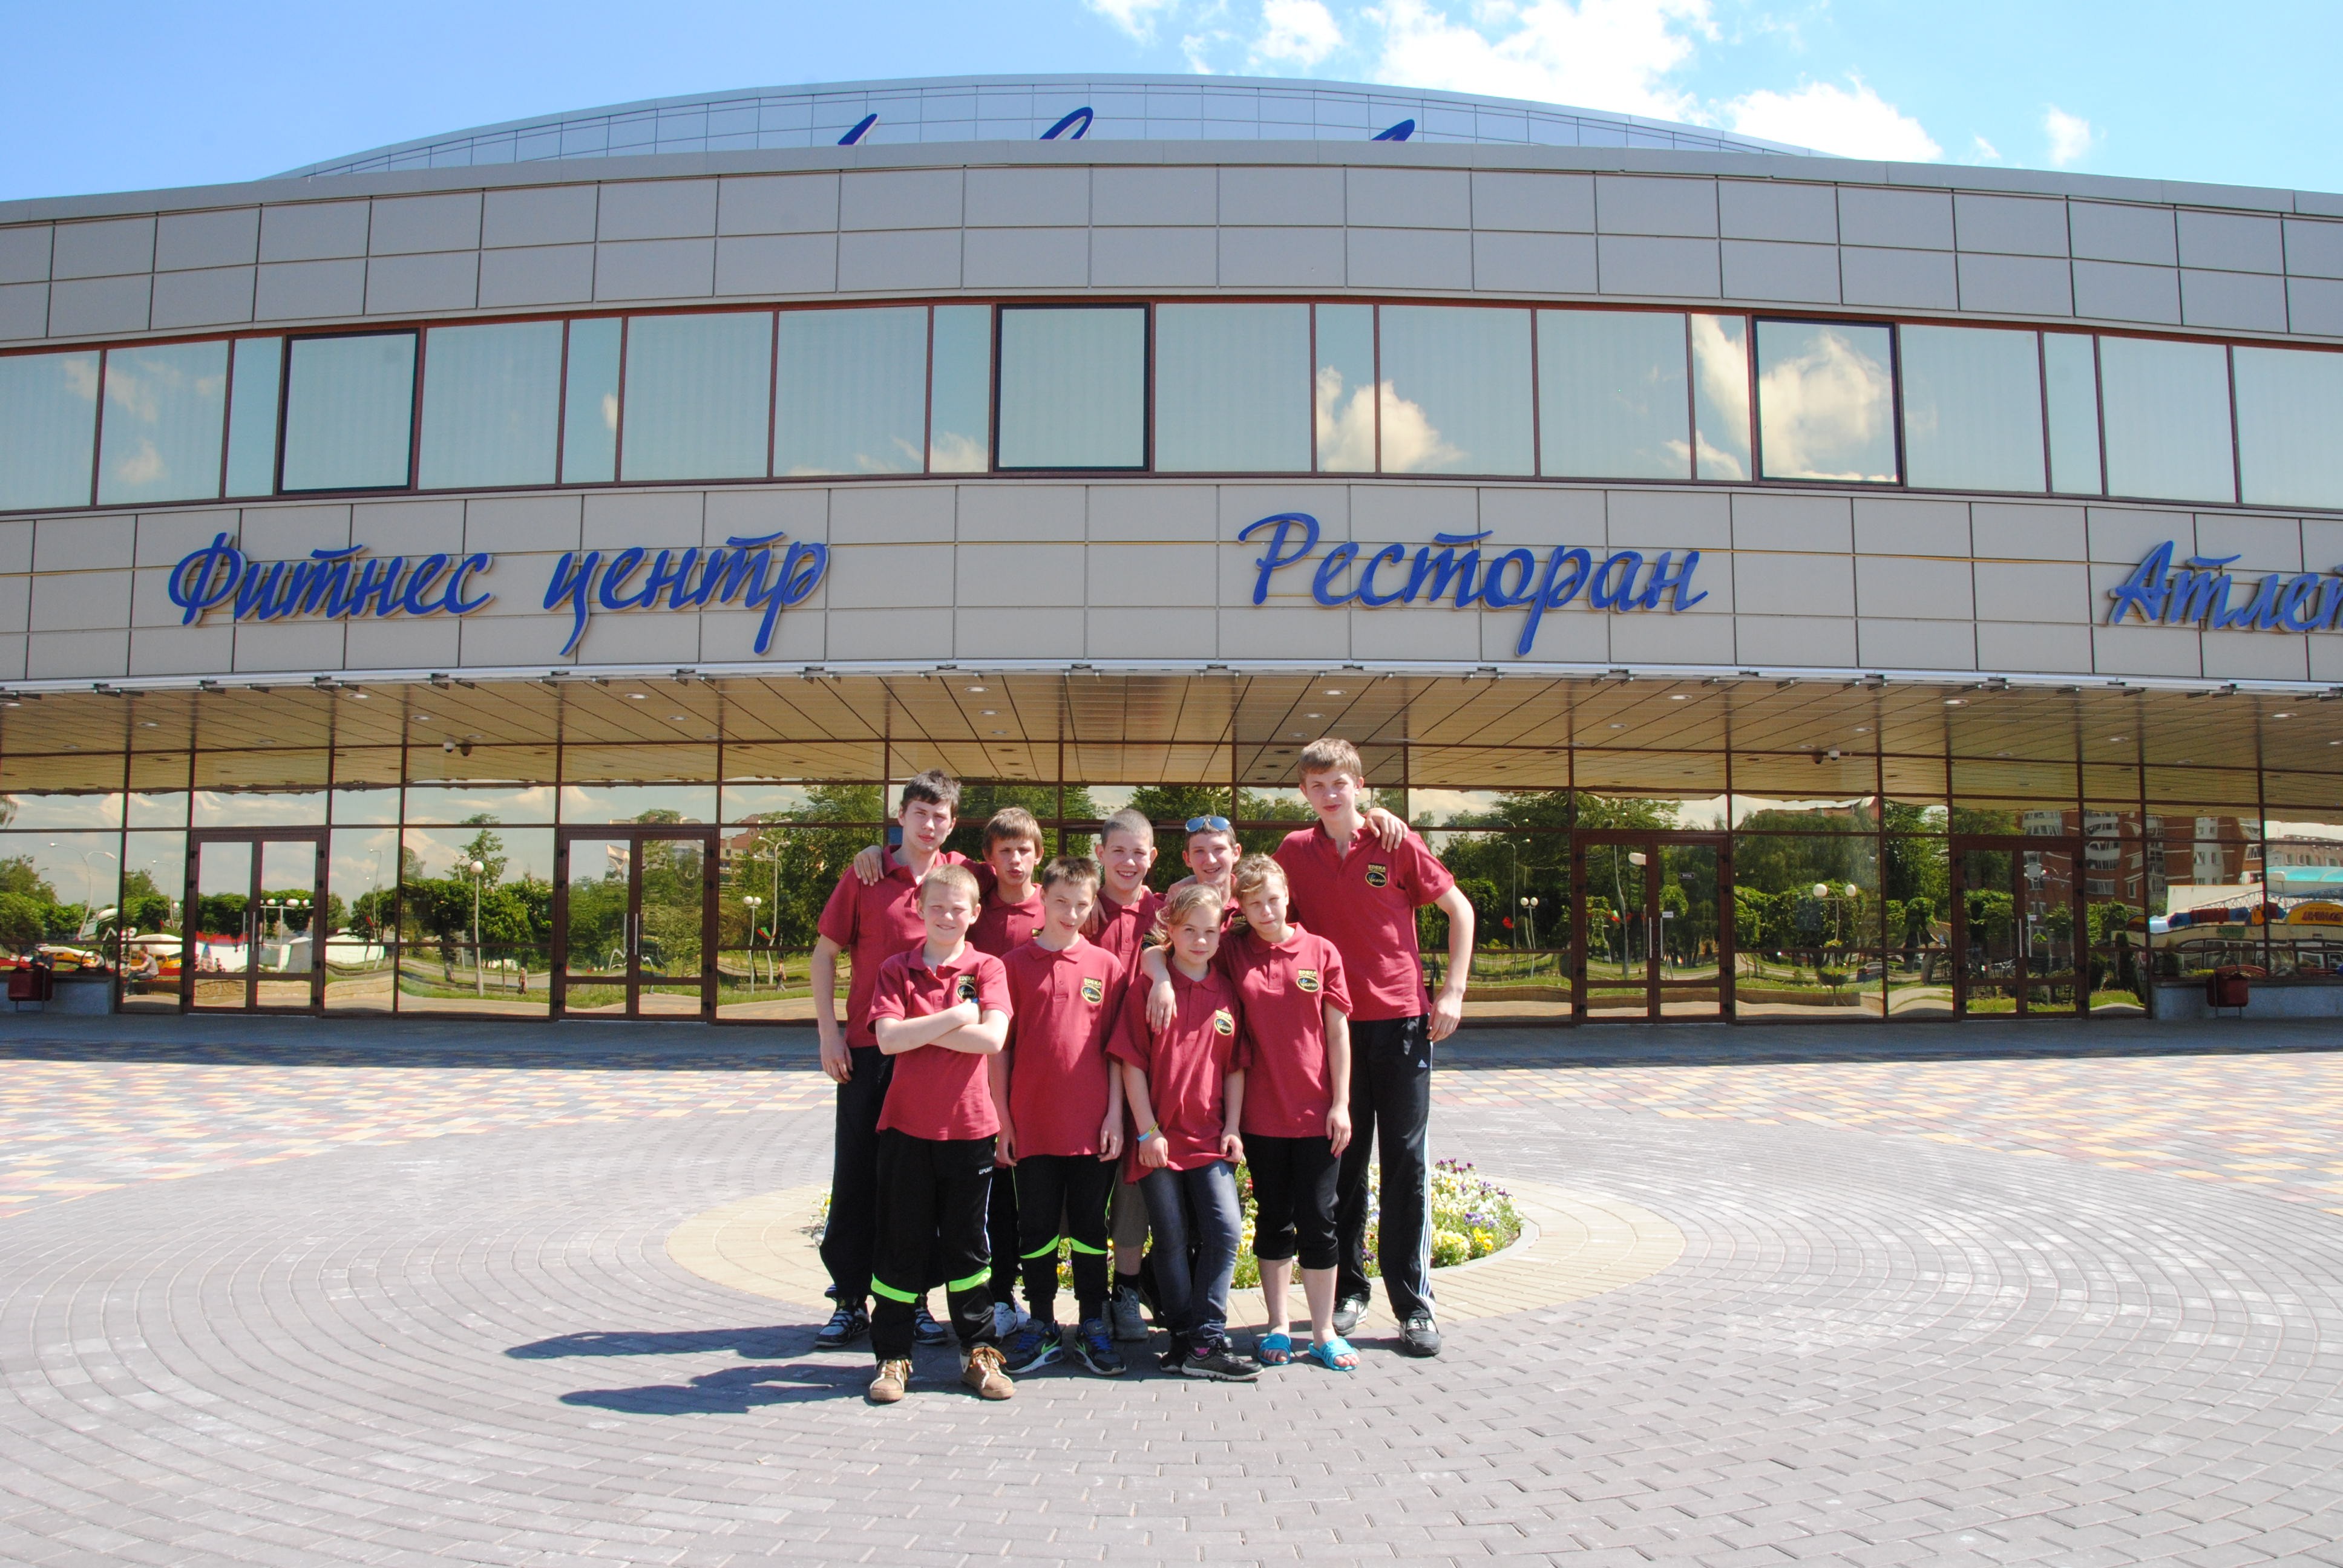 OPEN FESTOLIMP
Evento Sportivo per l’integrazione dei bambini con disturbi dello sviluppo psicofisico.
Orsha (Bielorussia)
